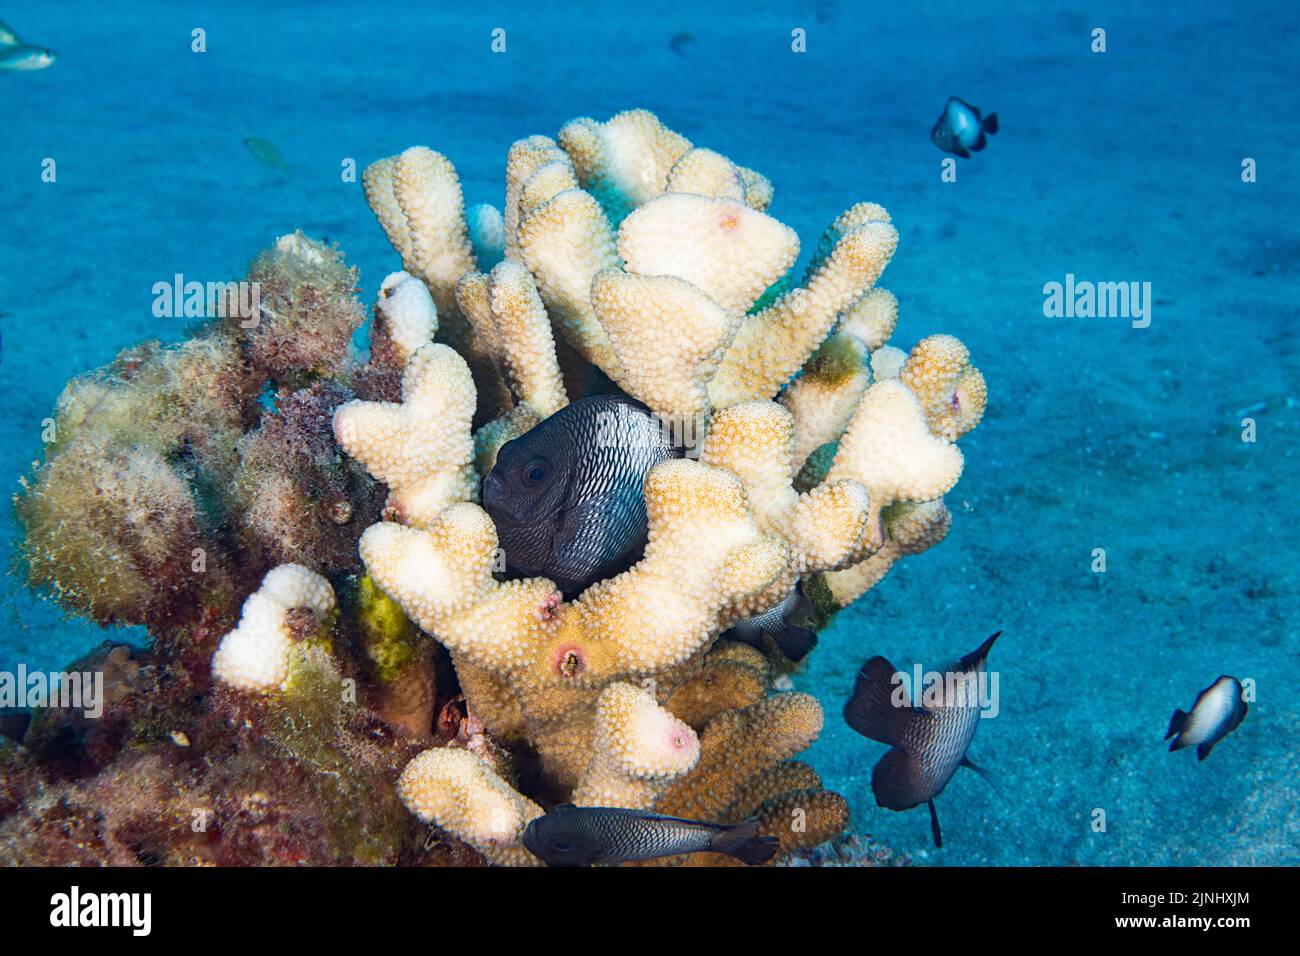 endemic Hawaiian dascyllus, Hawaiian threespot damsel, or Hawaiian domino damselfish, Dascyllus albisella, in partially bleached antler coral, Hawaii Stock Photo